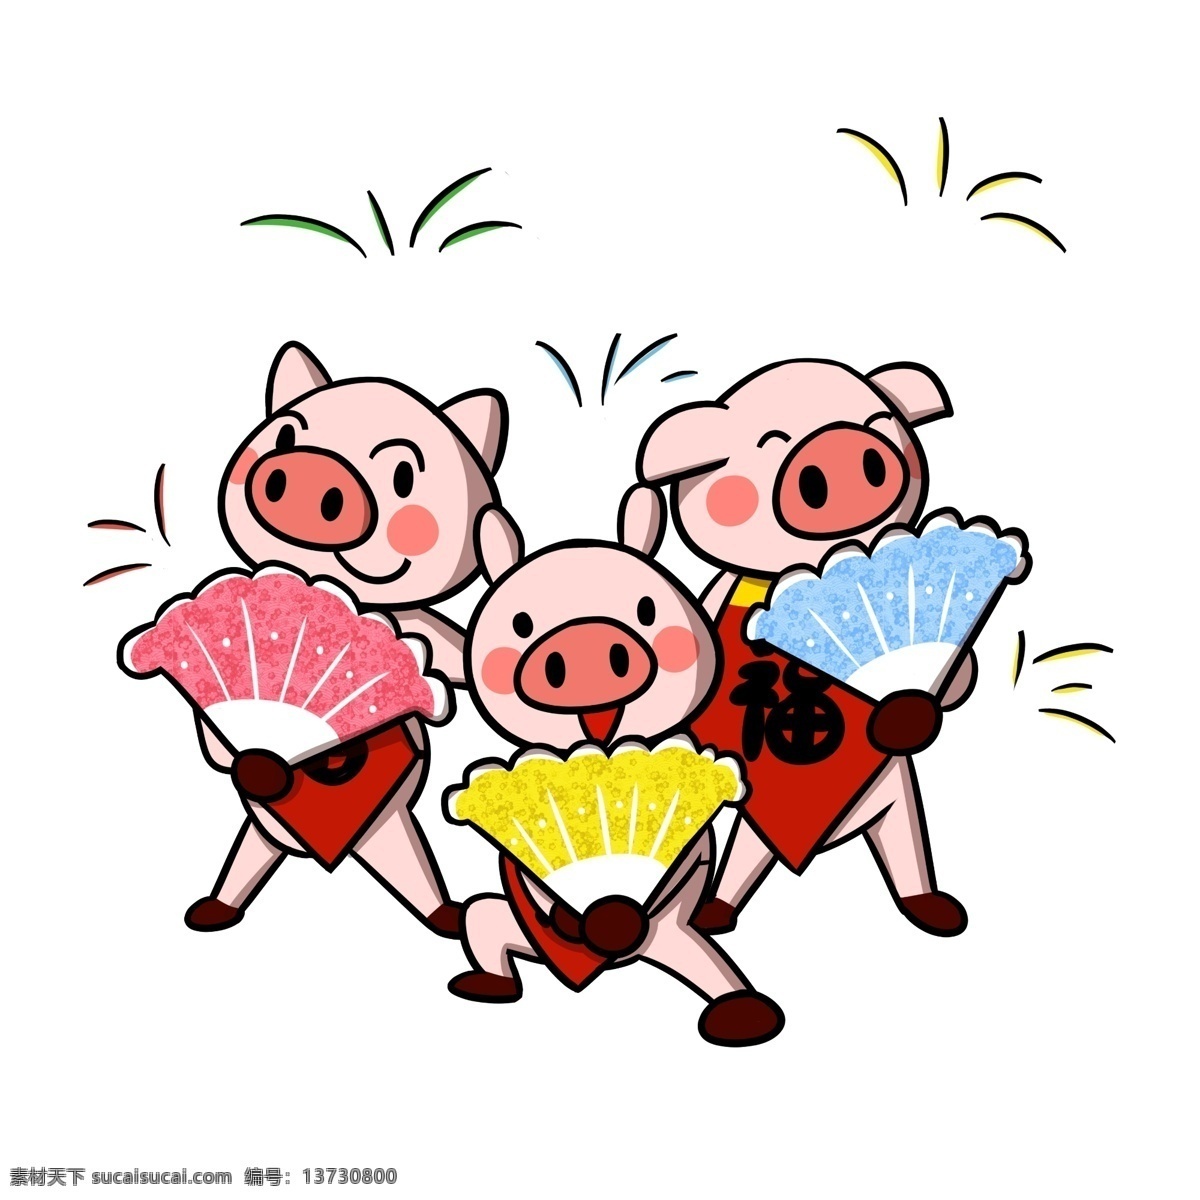 卡通 小 猪 新年 扭秧歌 透明 底 春节 跳舞 过年 新年快乐 小猪 2019 猪年 猪年快乐 春节快乐 卡通小猪 过春节